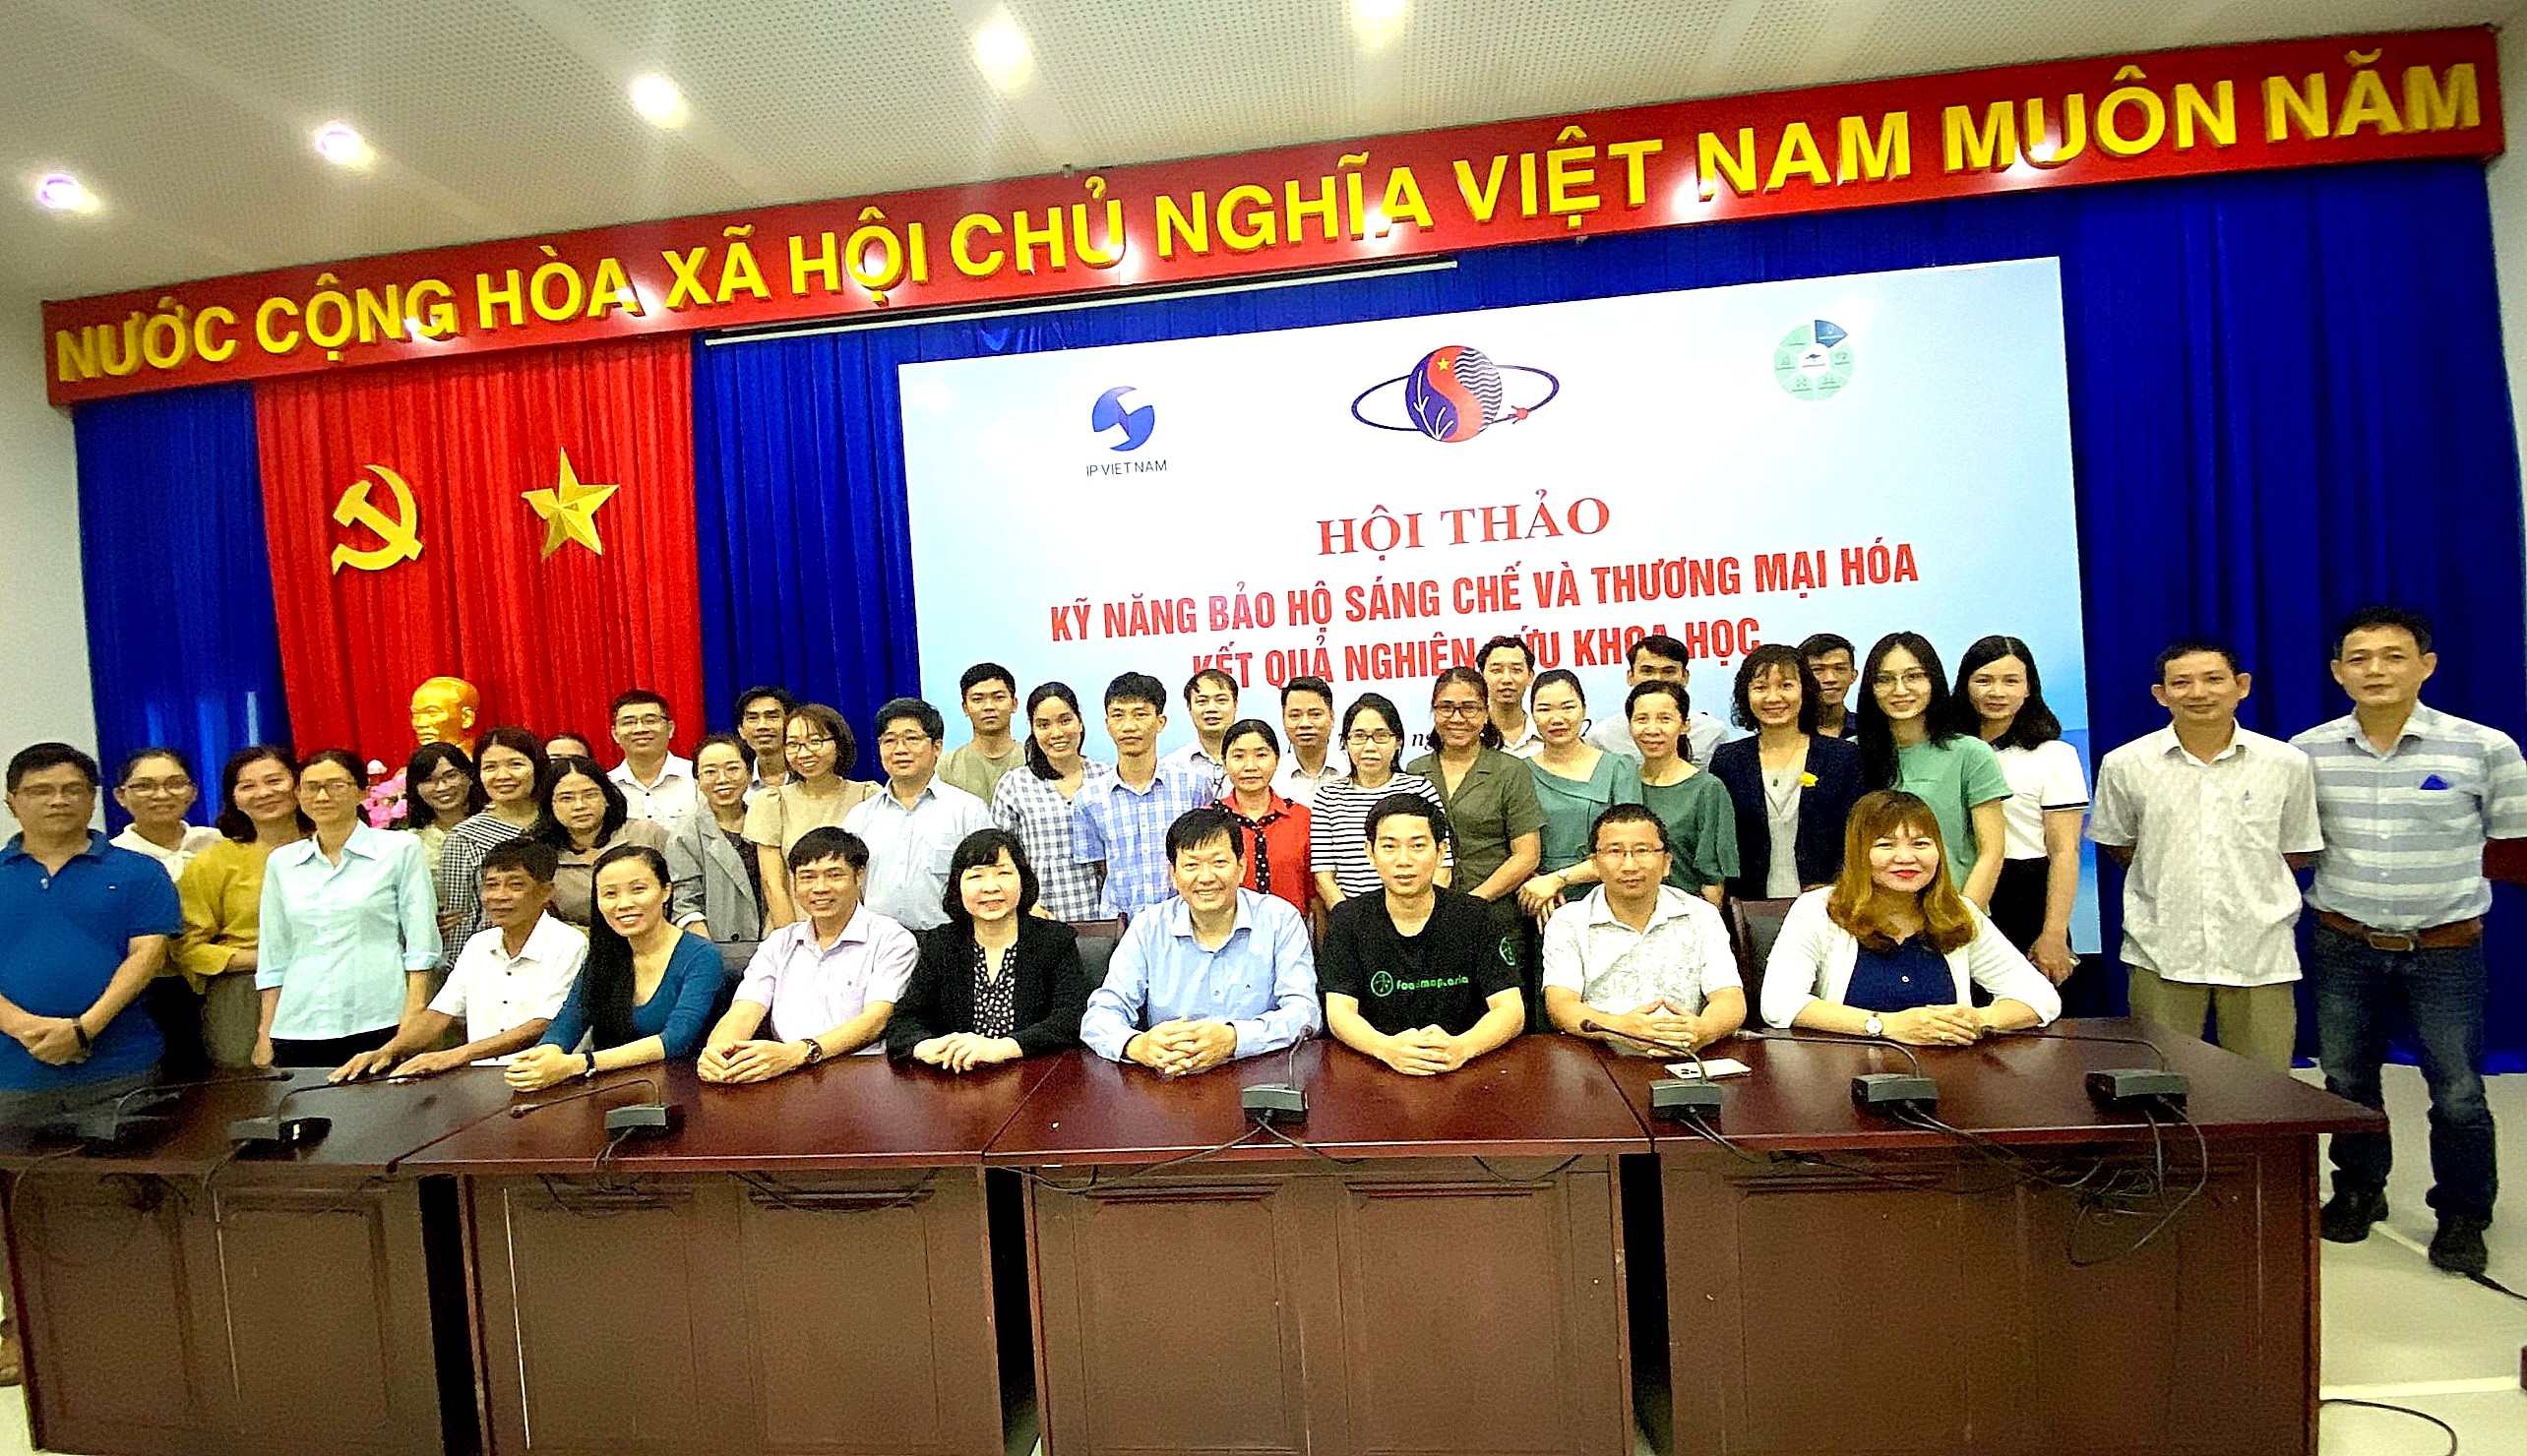 Kỹ năng bảo hộ sáng chế và thương mại hóa kết quả nghiên cứu khoa học tại thành phố Hồ Chí Minh và Nha Trang